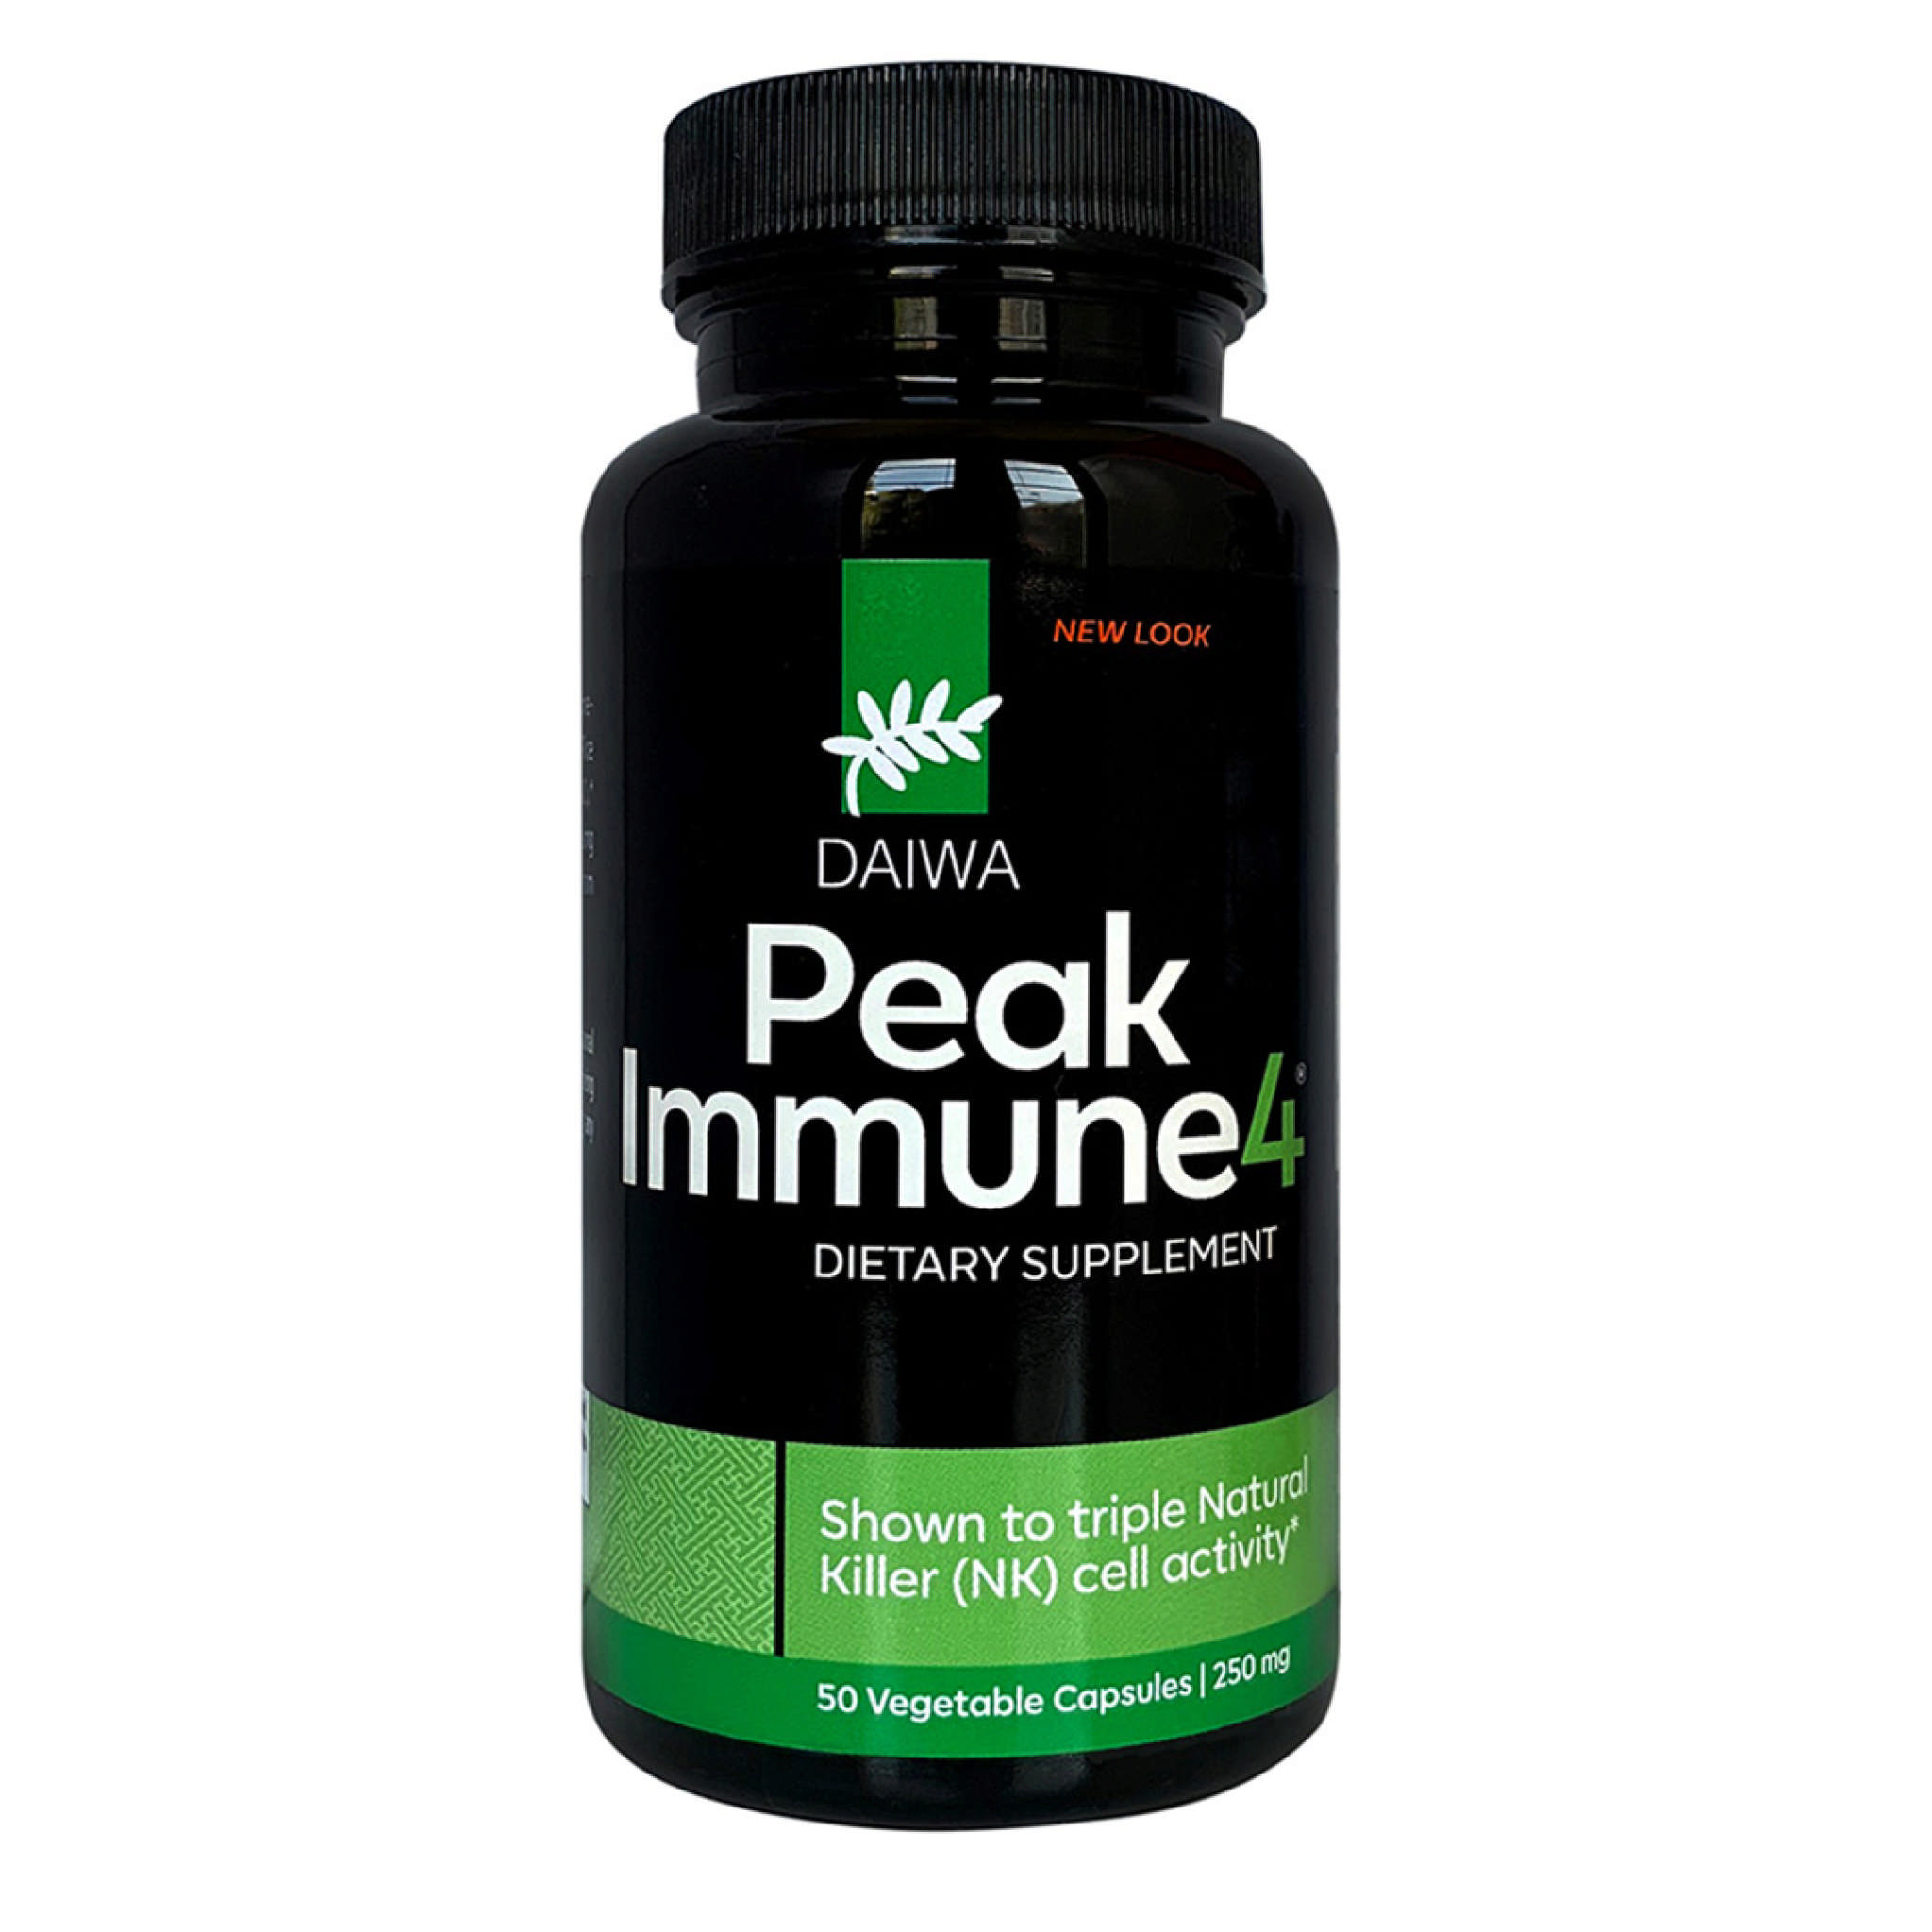 Daiwa Pharma - Peakimmune4 250 mg